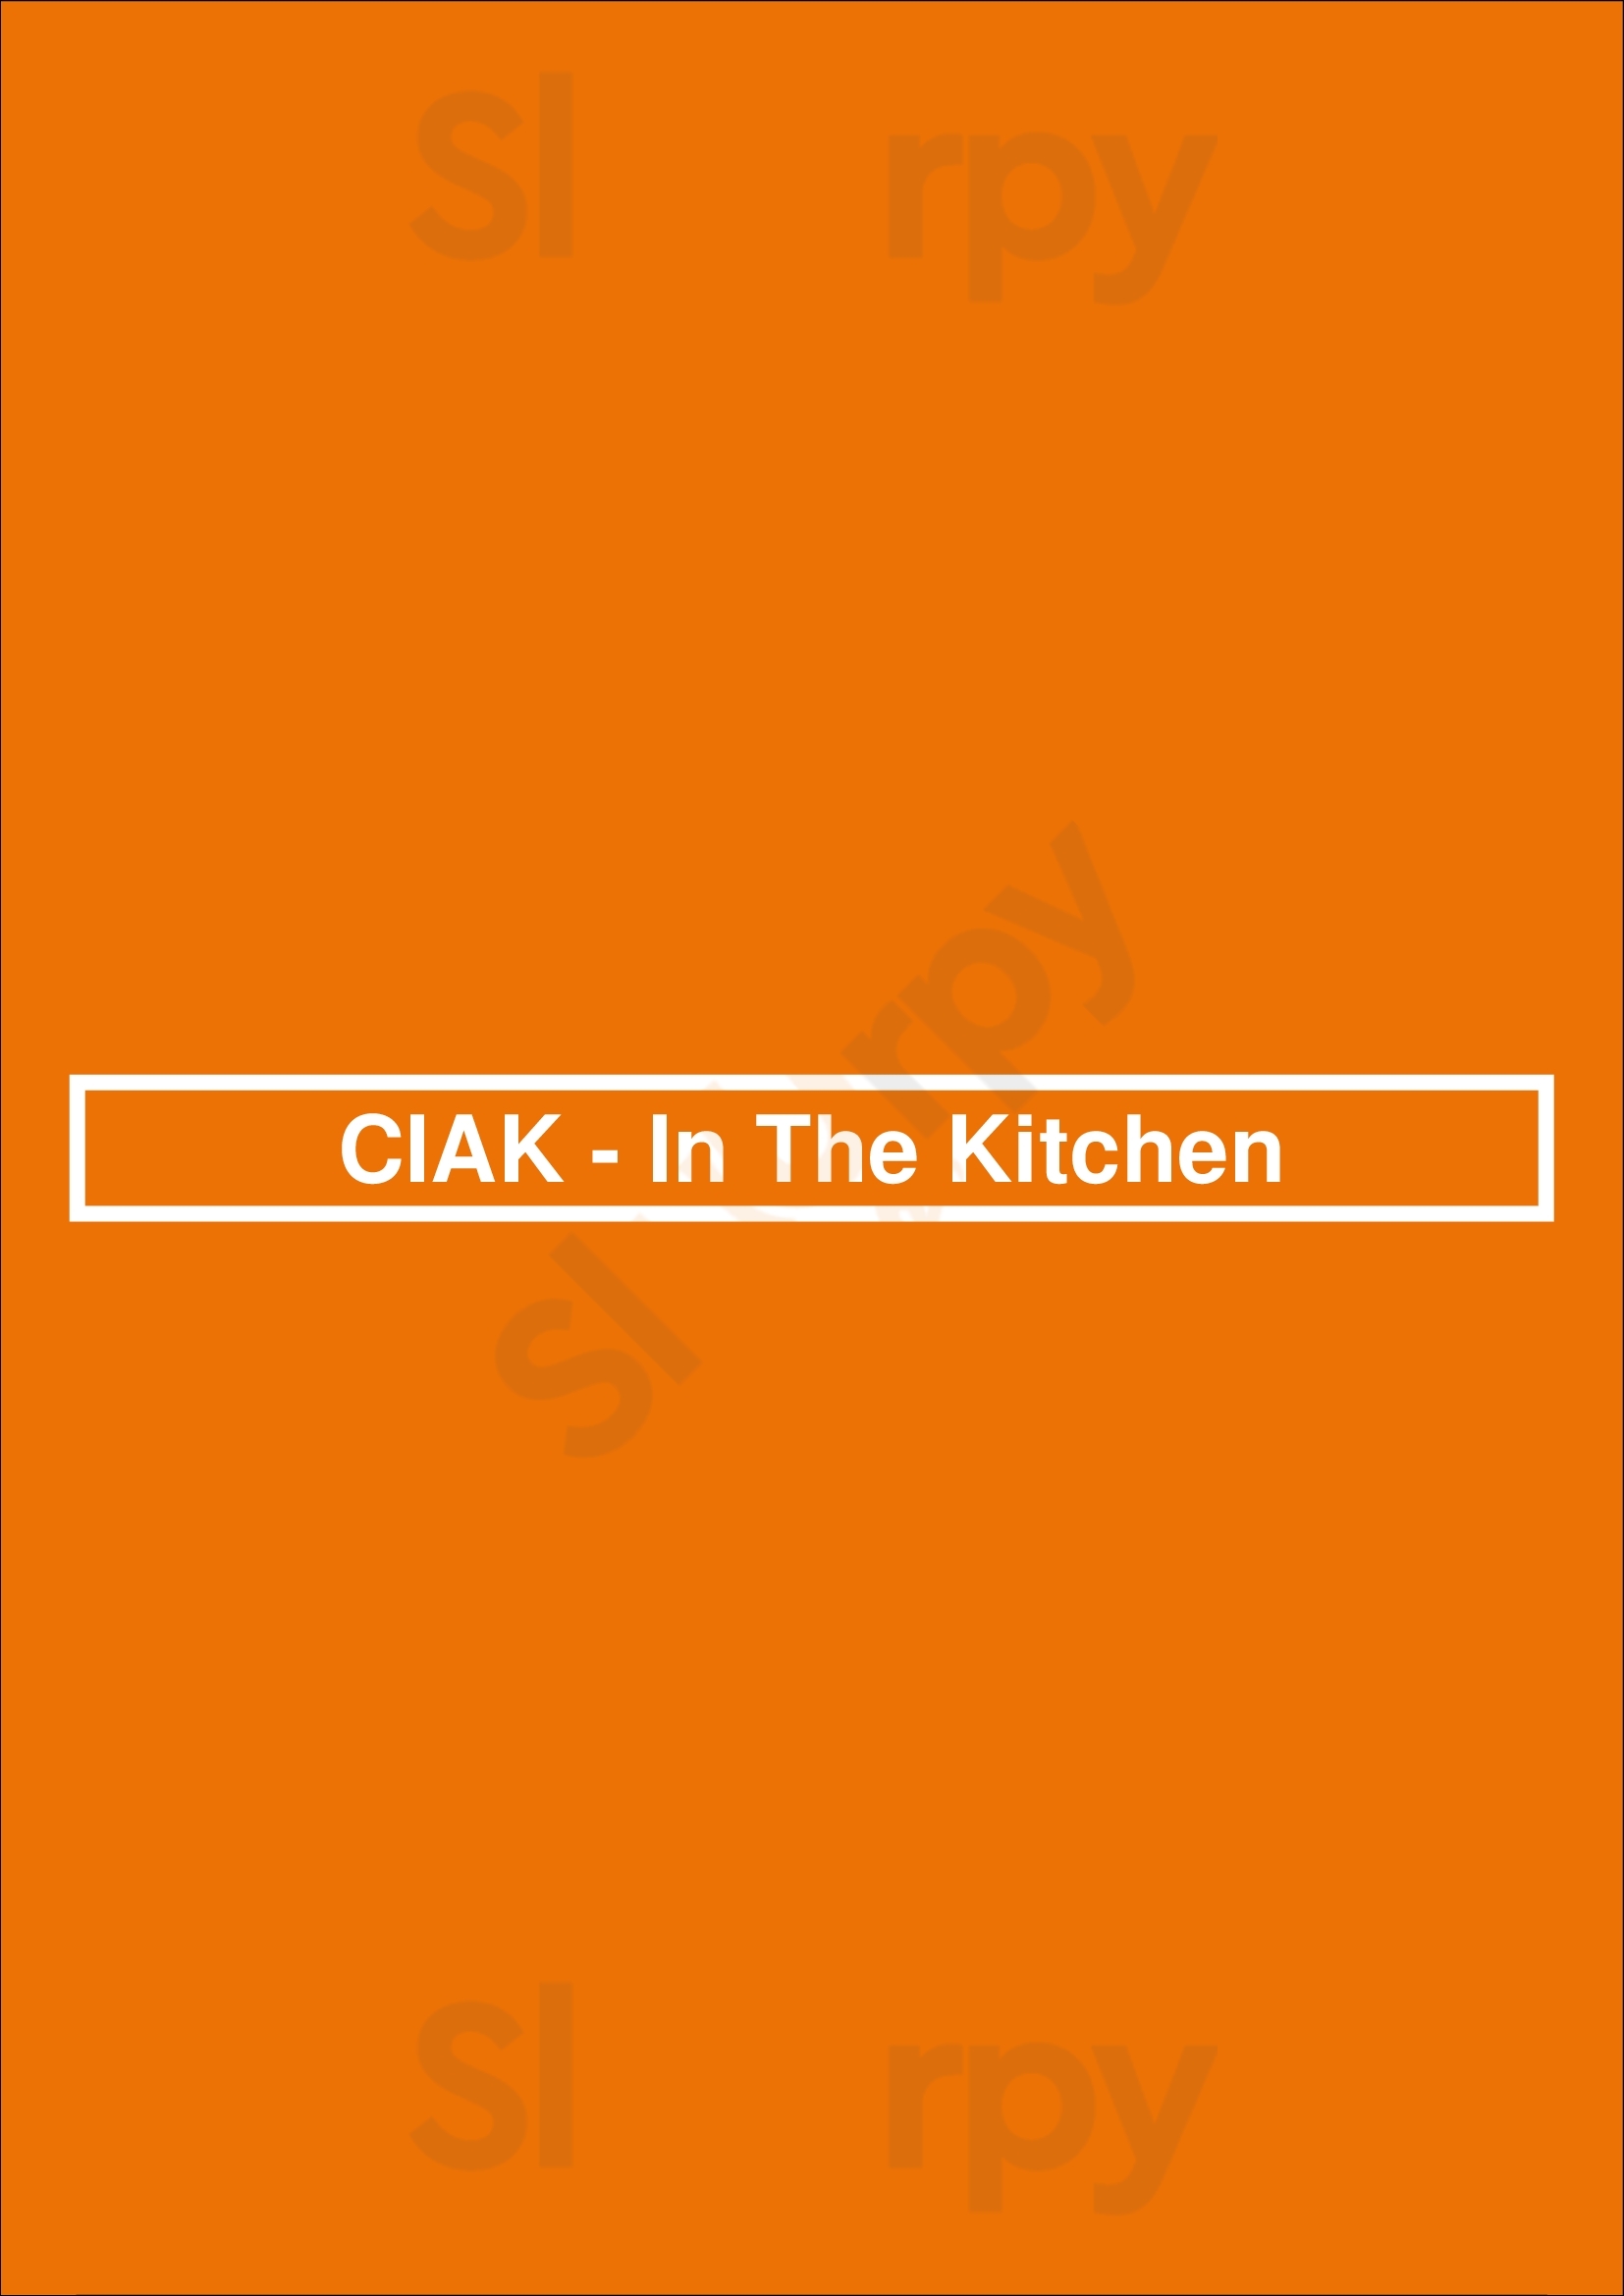 Ciak - In The Kitchen 香港 Menu - 1